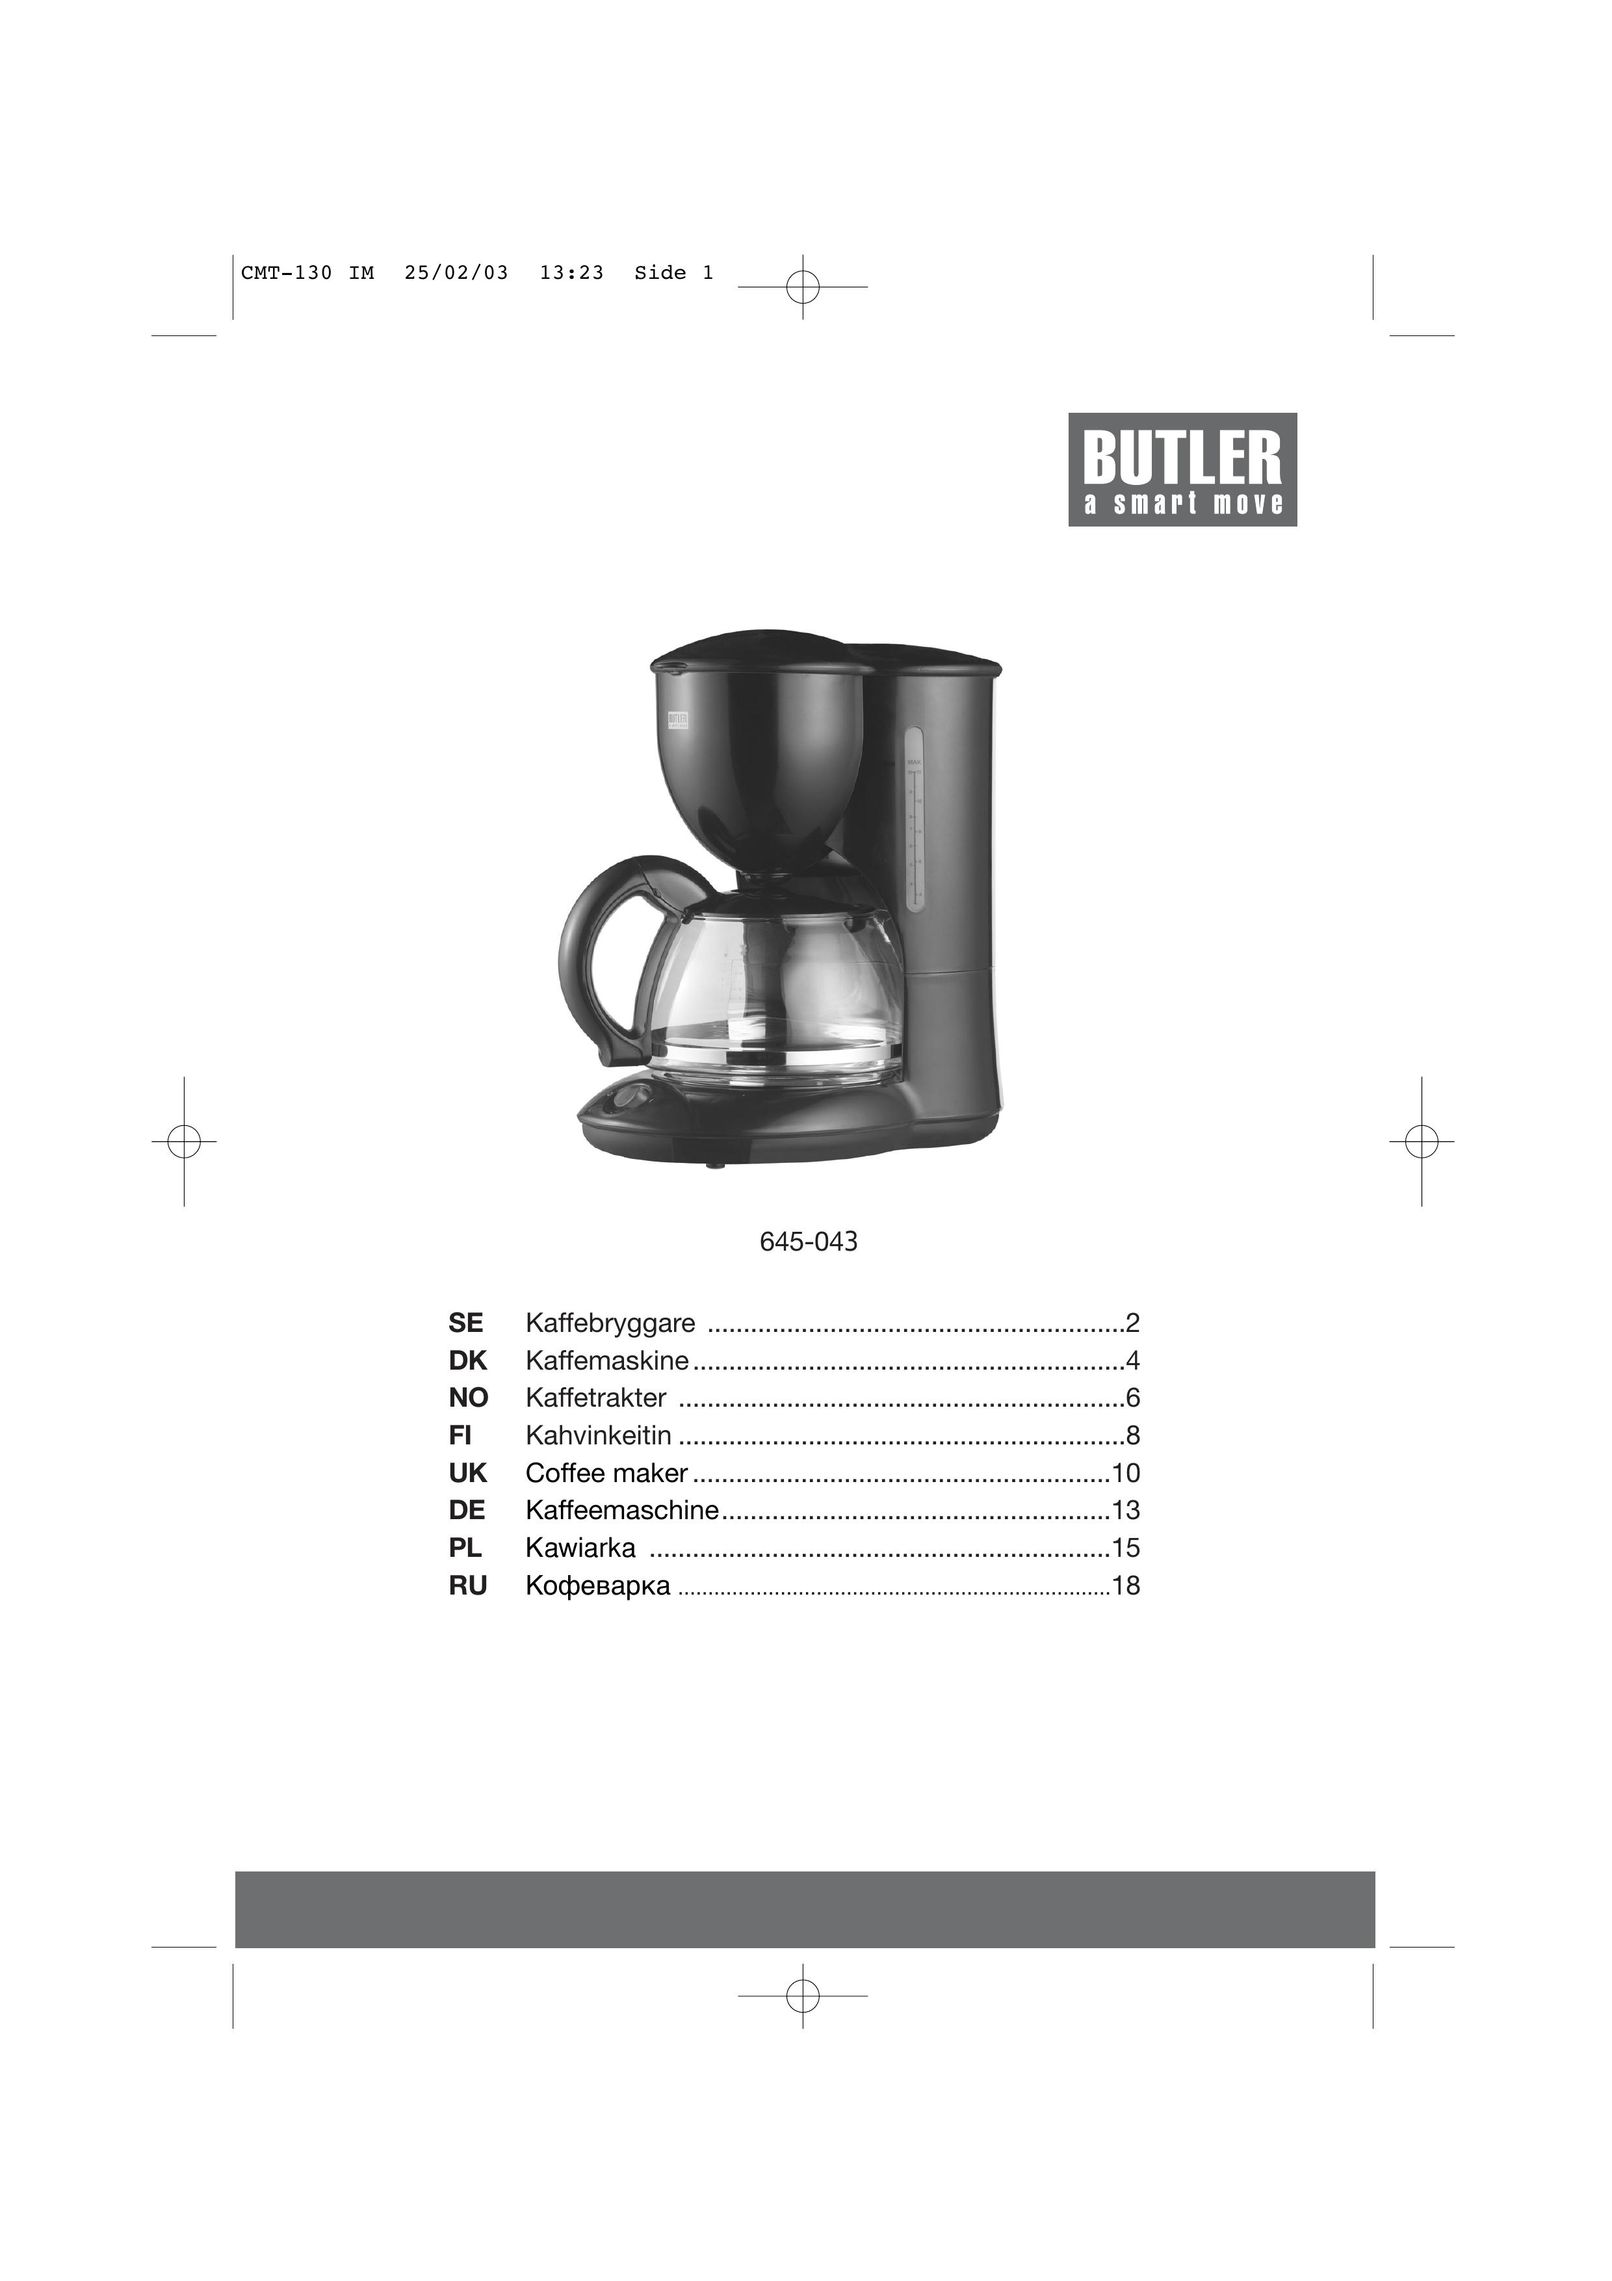 Butler 645-043 Coffeemaker User Manual